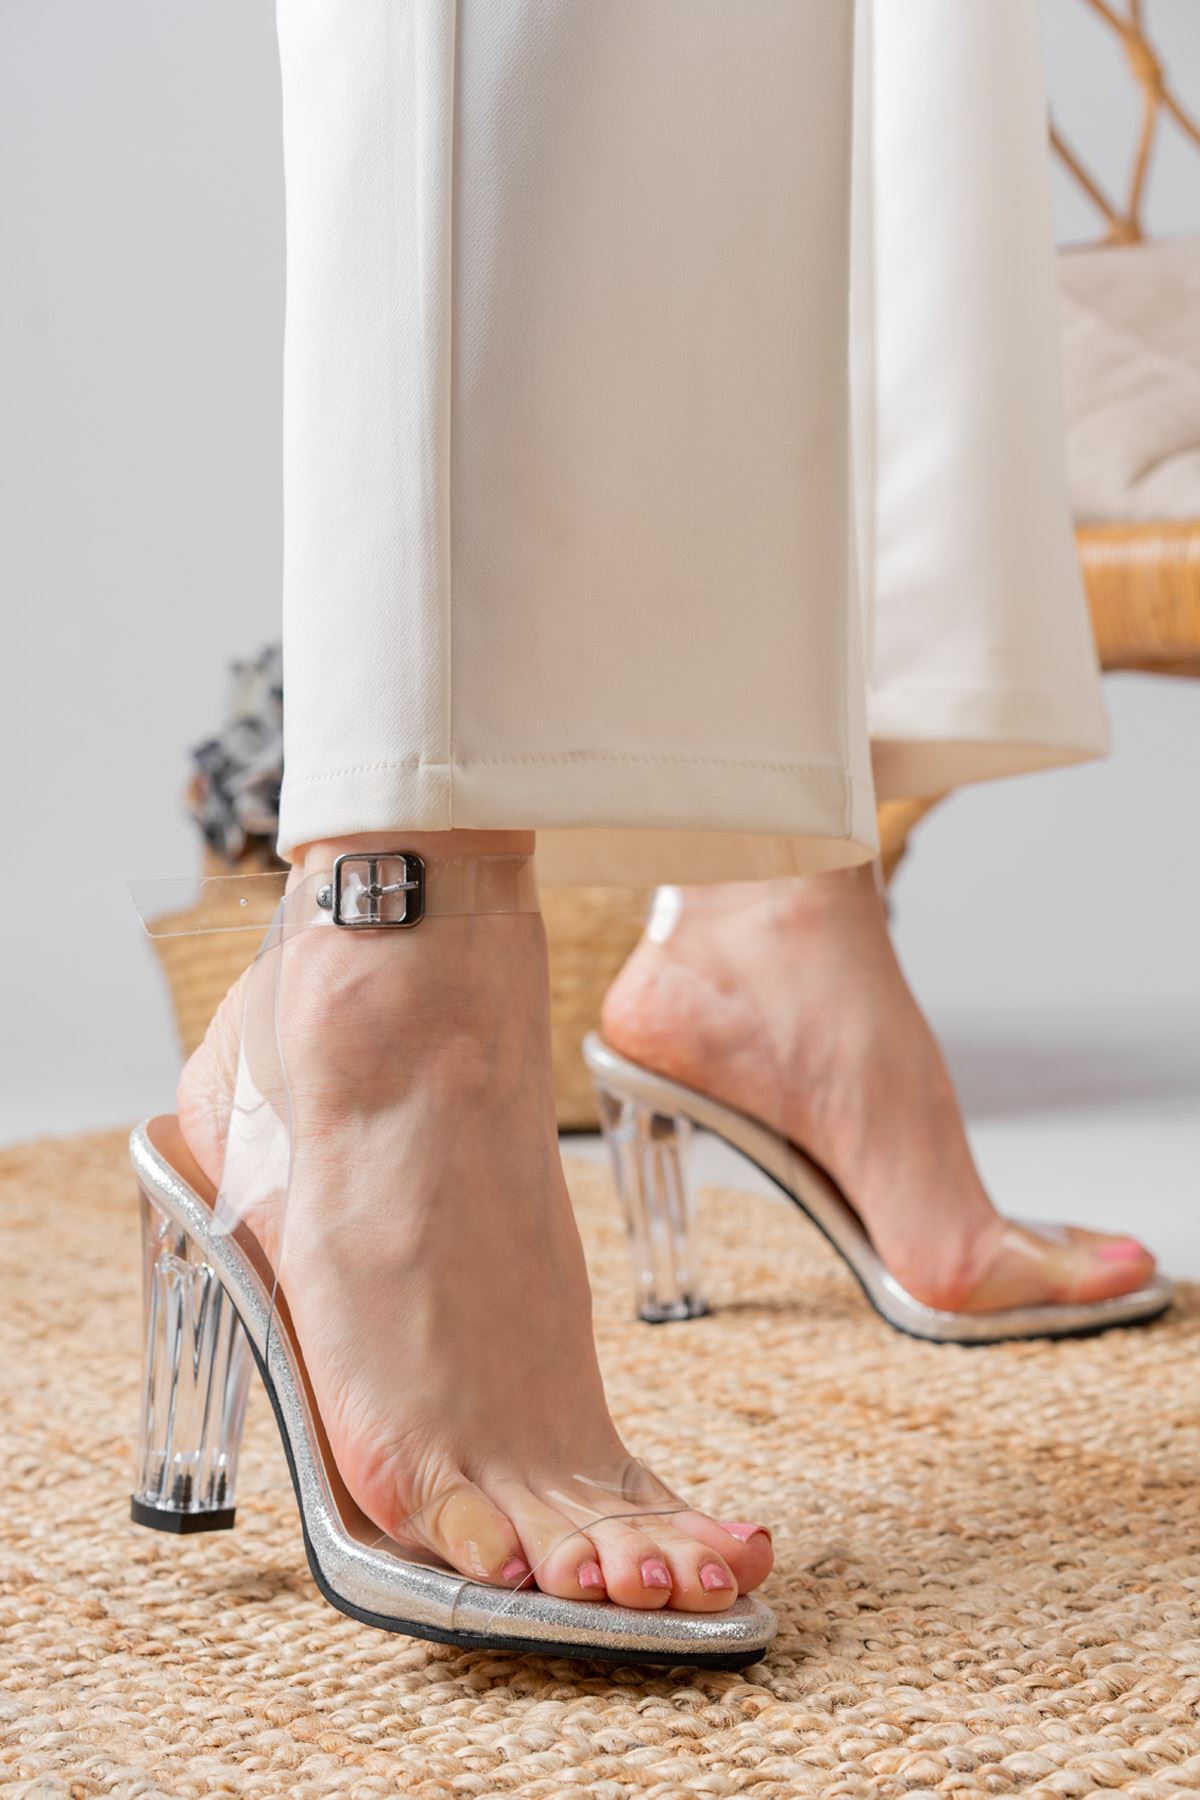 Pagan Gümüş Simli Şeffaf Bantlı Detaylı Yüksek Şeffaf Topuklu Kadın Ayakkabı  